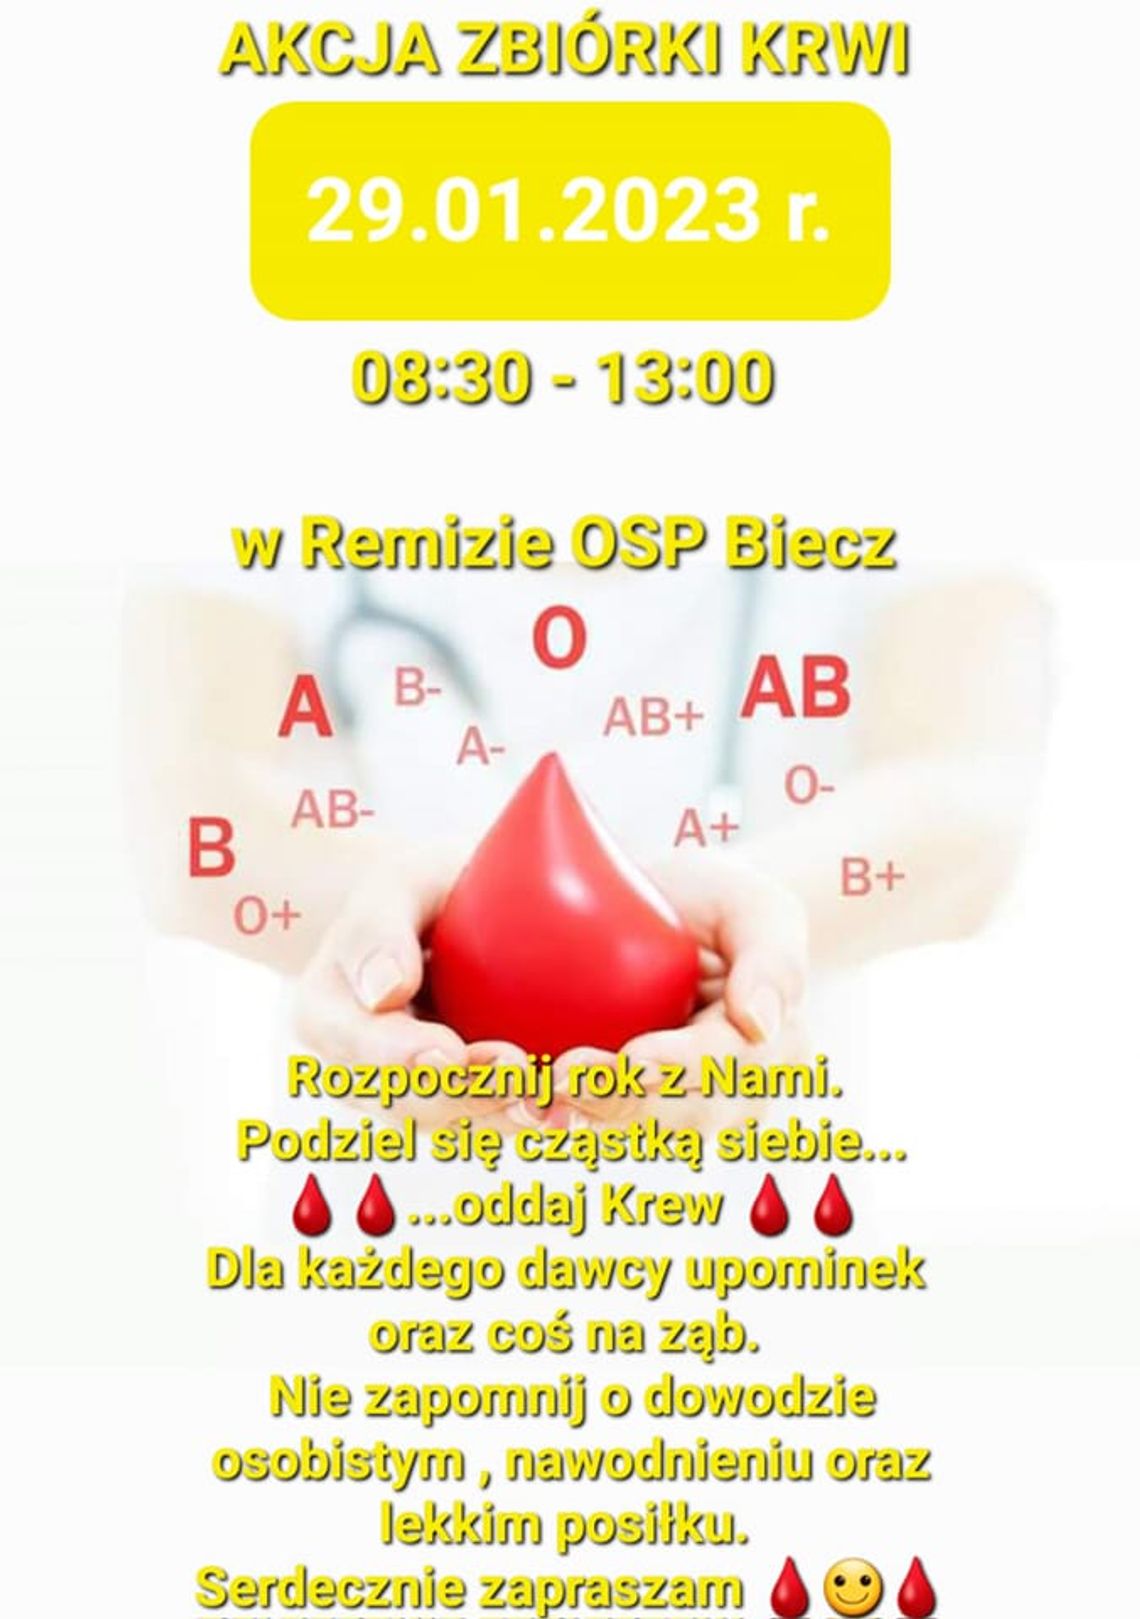 Akcja Zbiórki Krwi w Remizie OSP Biecz | halogorlice.info